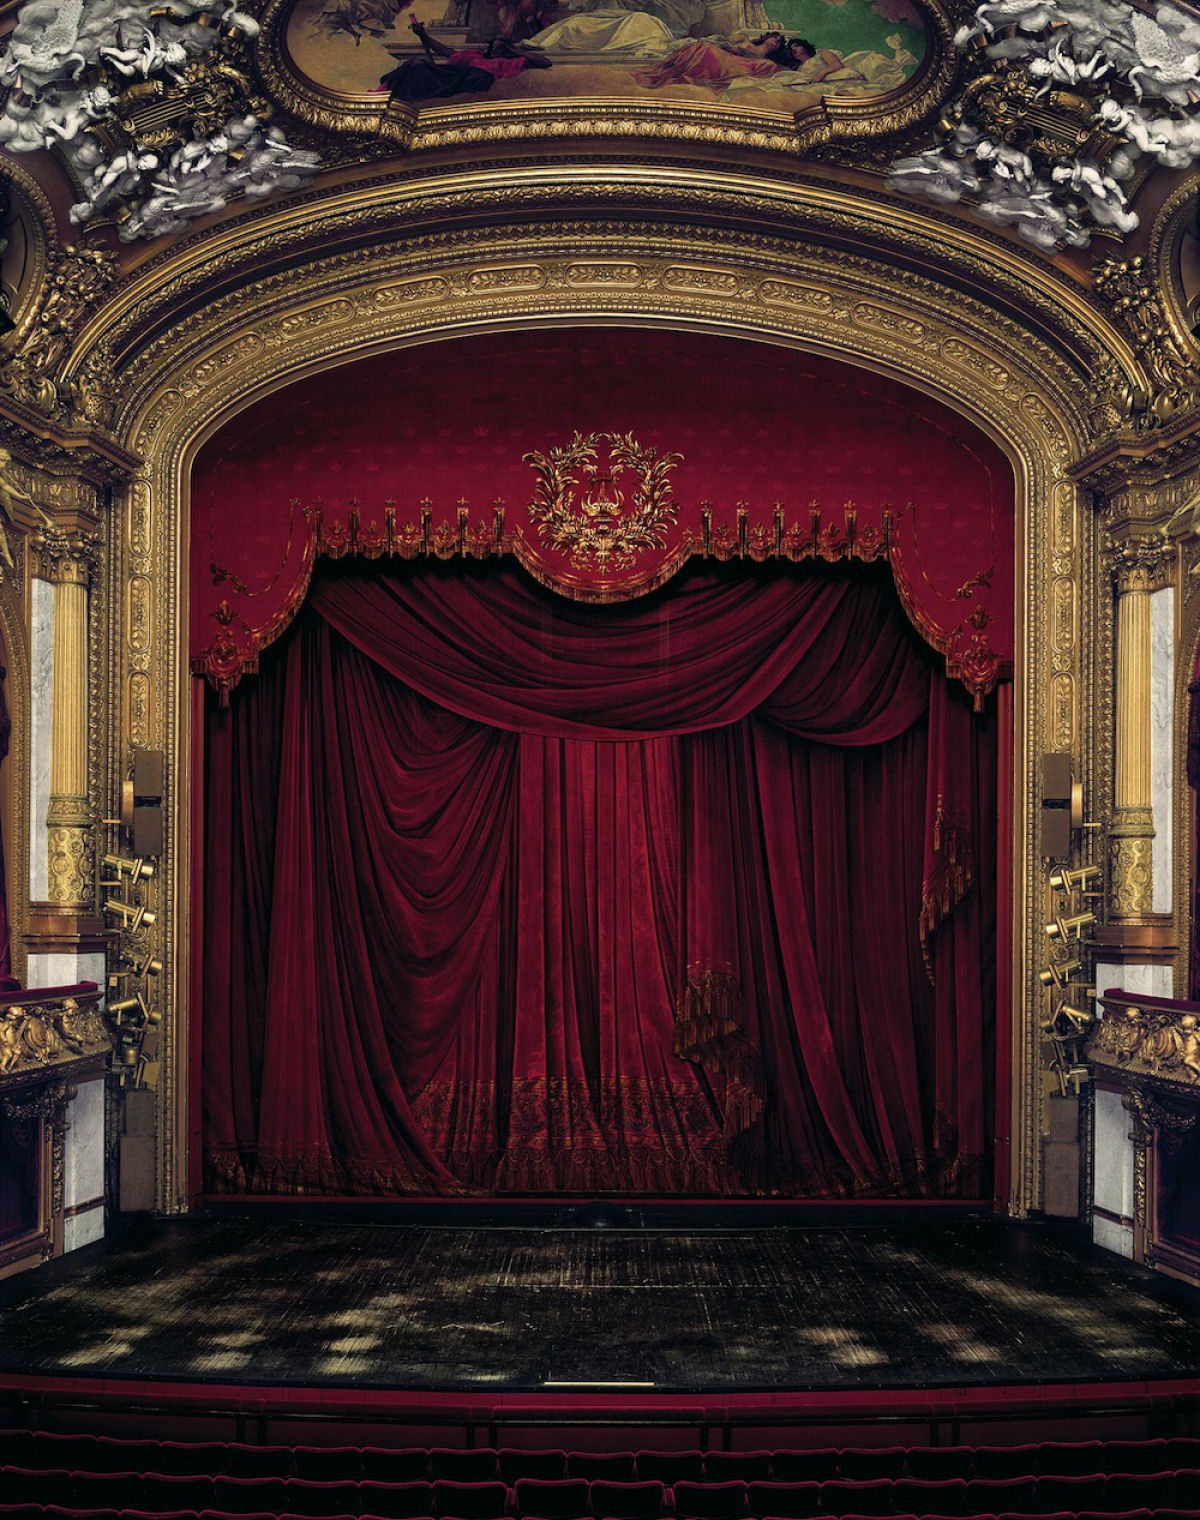 Fotografias de grande formato capturam ornamentada casas de ópera de todo o mundo 11